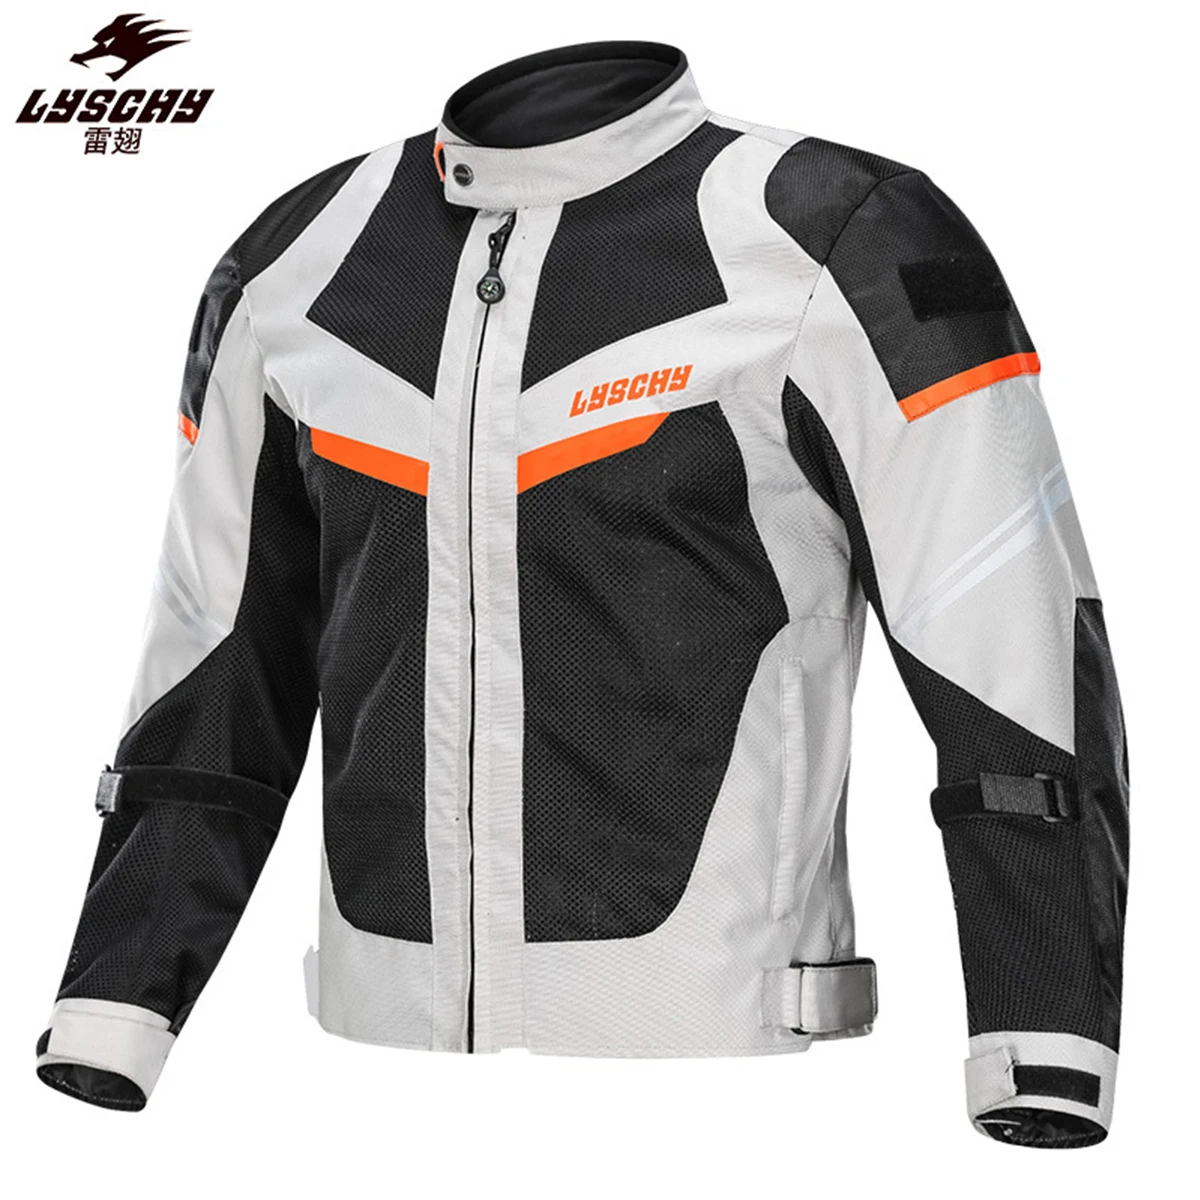 

Мотоциклетная куртка LYSCHY для мужчин, городская летняя защита, светоотражающая дышащая одежда, водонепроницаемое защитное снаряжение